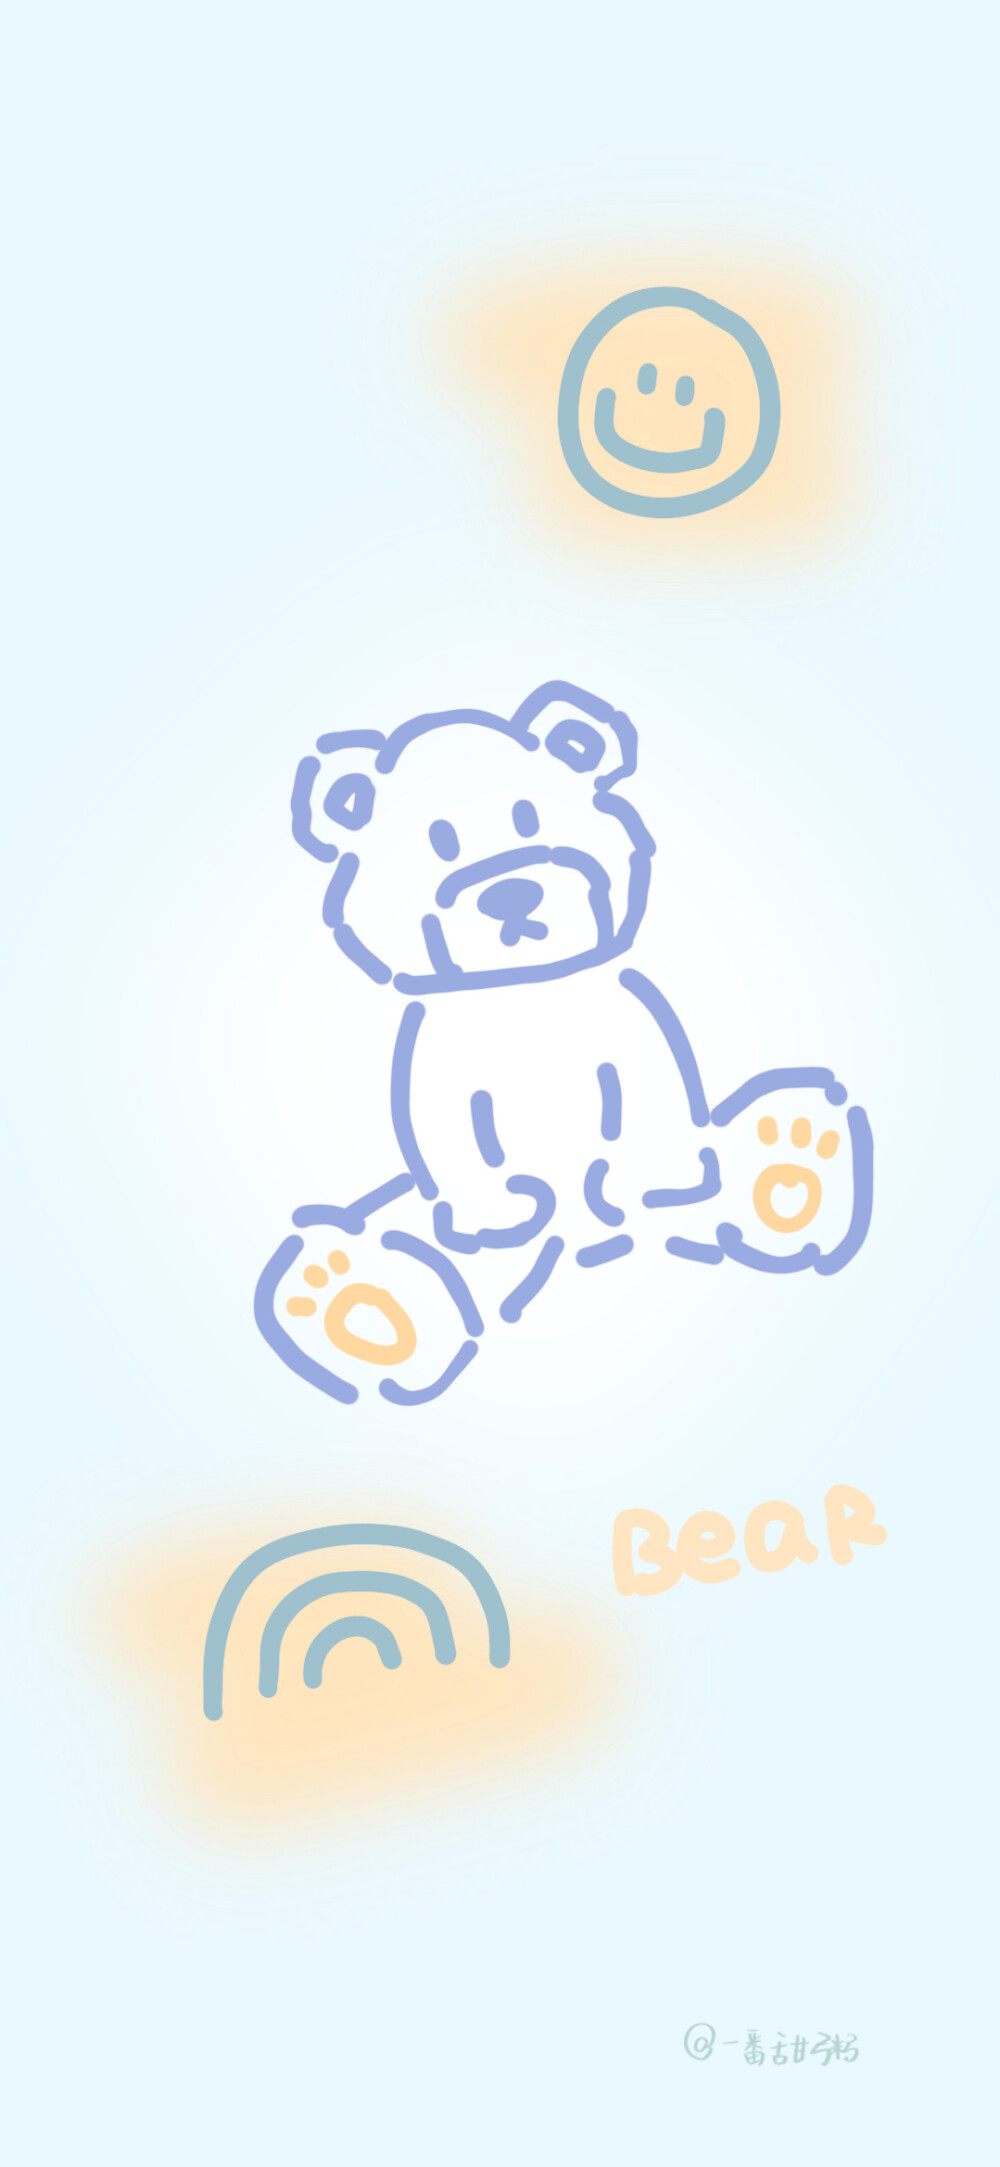 可爱 壁纸 小熊
来源于微博©一番甜粥 